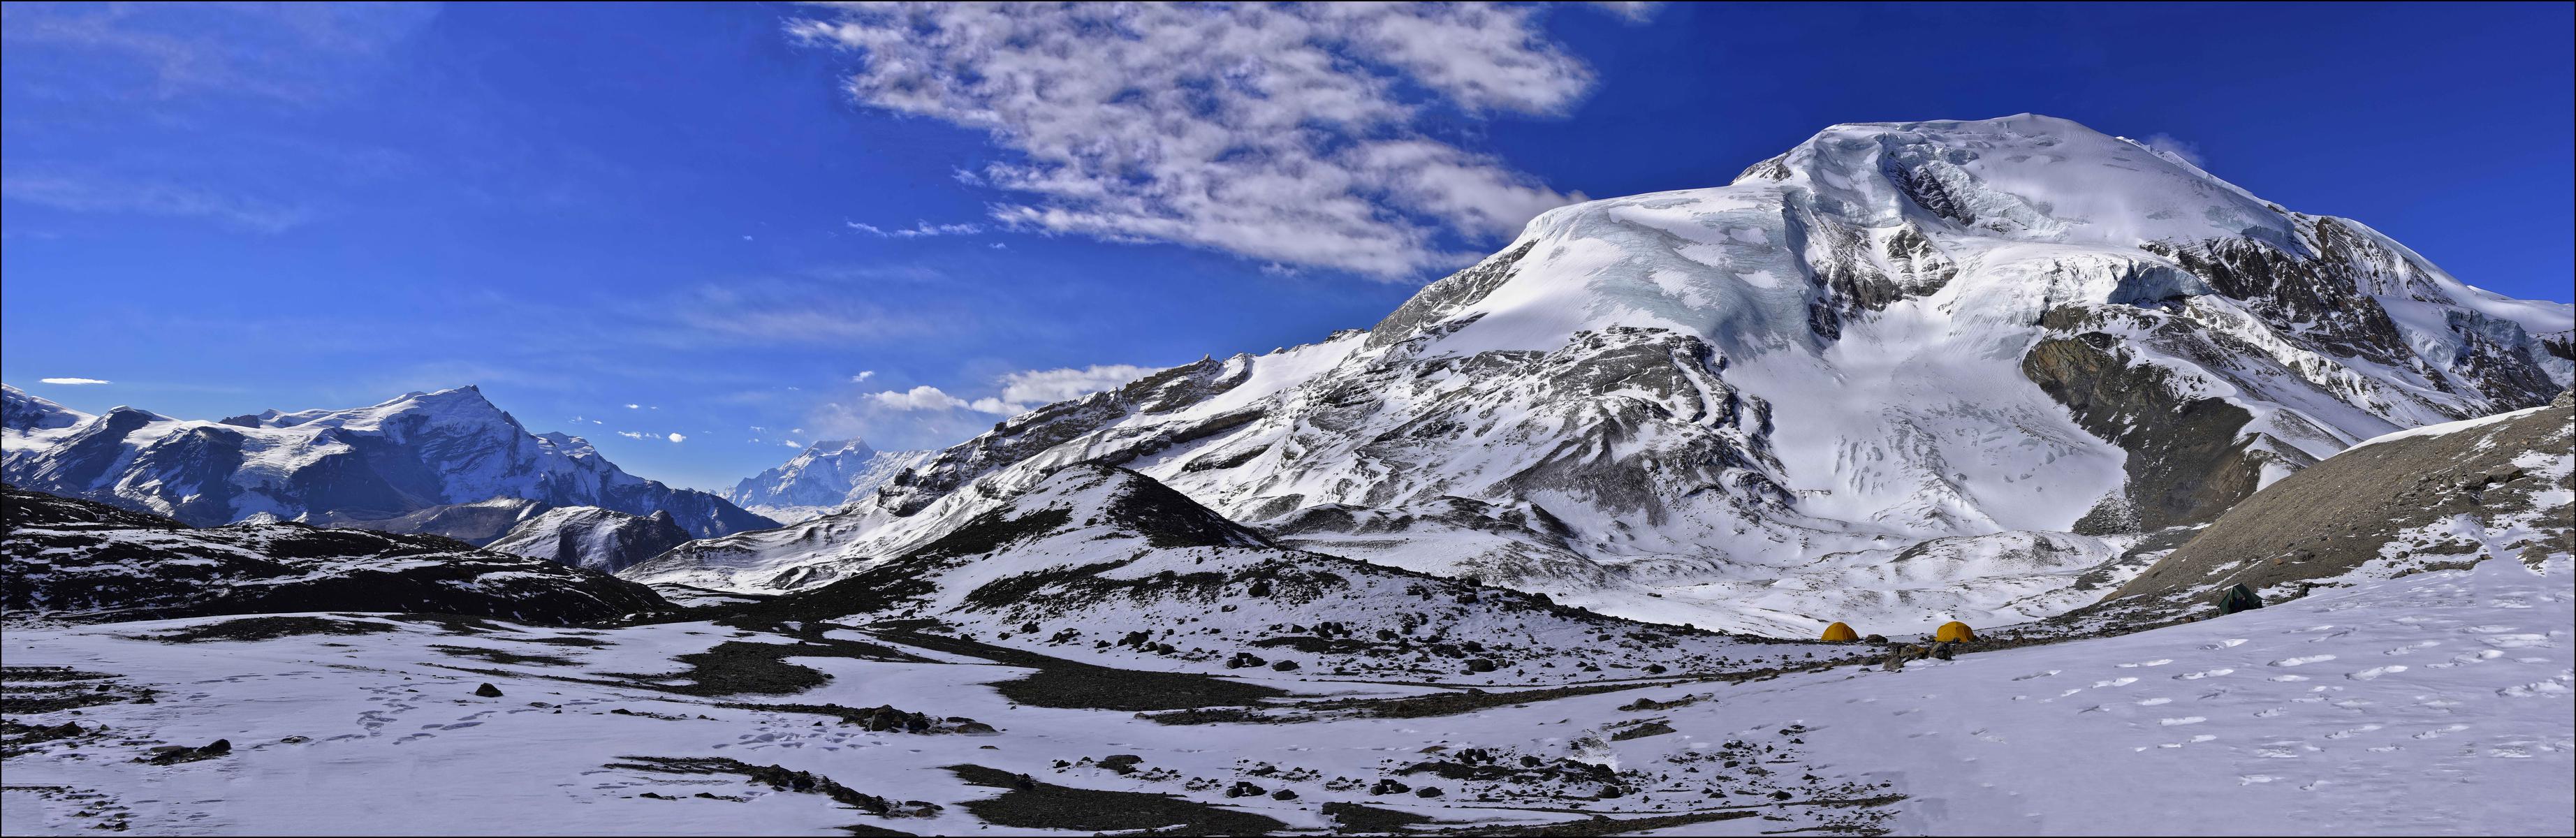 Thorung peak 6144 м.